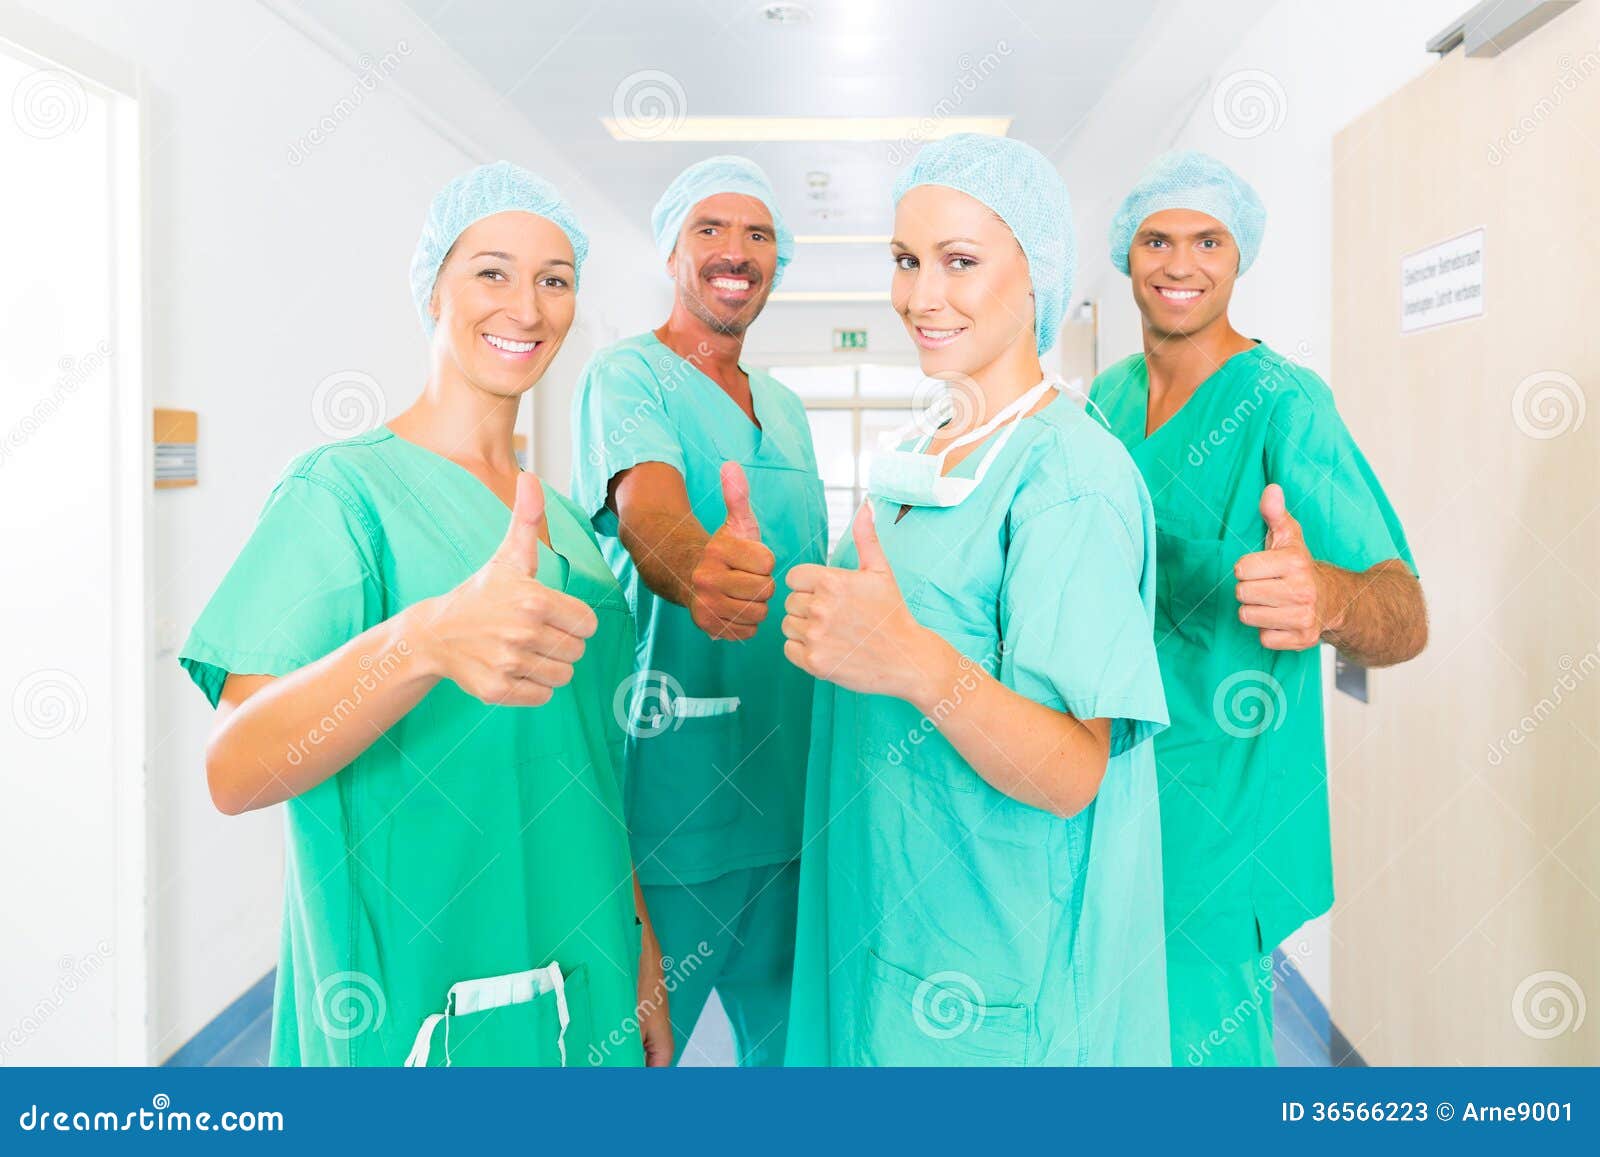 https://thumbs.dreamstime.com/z/cirurgi%C3%B5es-no-hospital-ou-na-cl%C3%ADnica-como-equipe-36566223.jpg